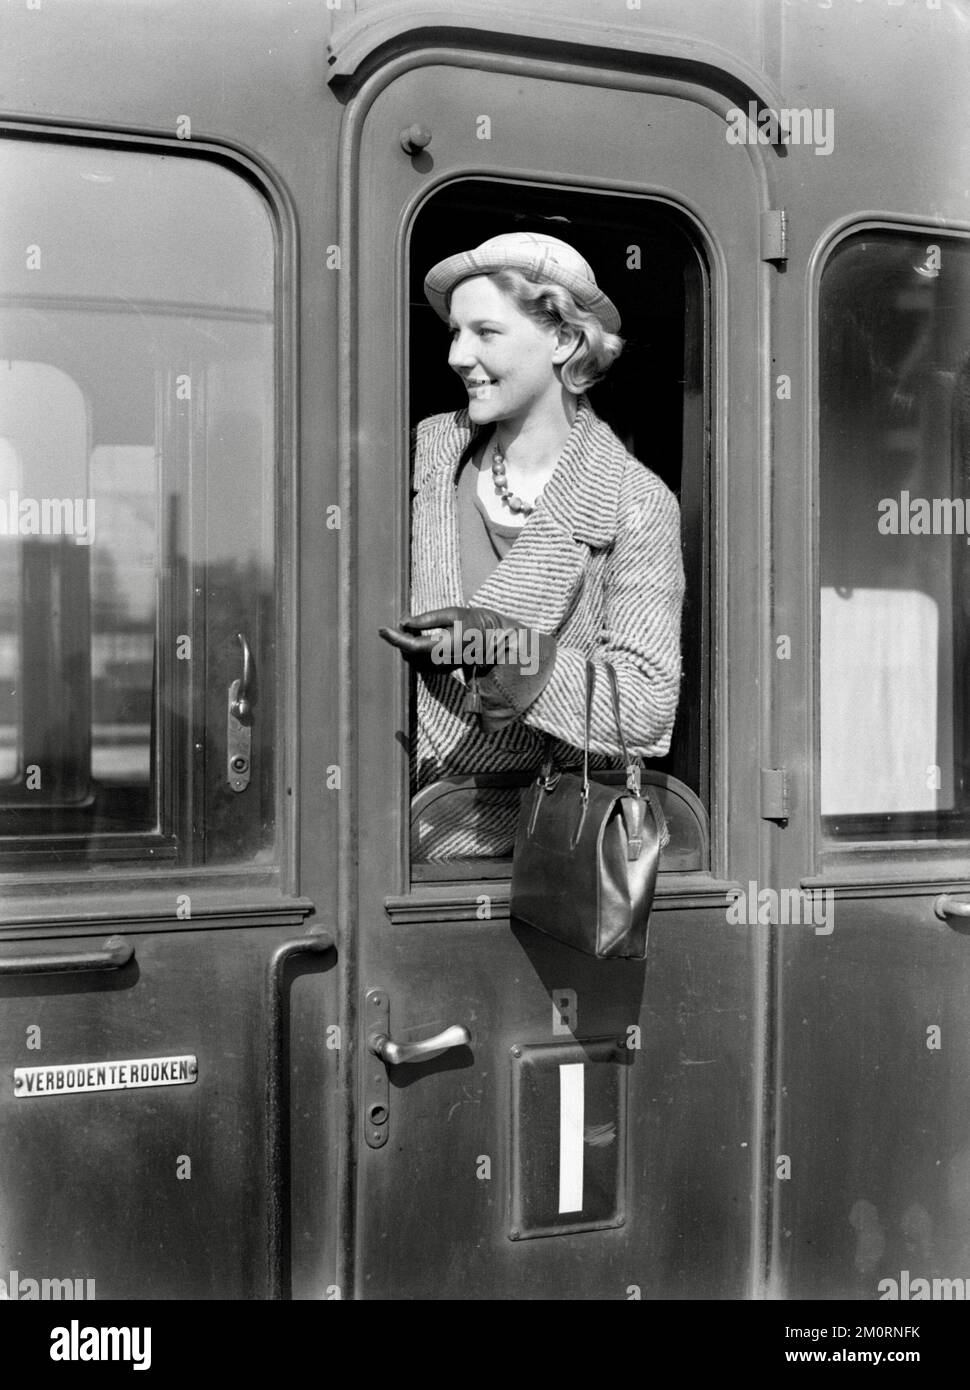 Willem van de Poll - Model Eva Waldschmidt in the door of a train compartment - 1932 Stock Photo